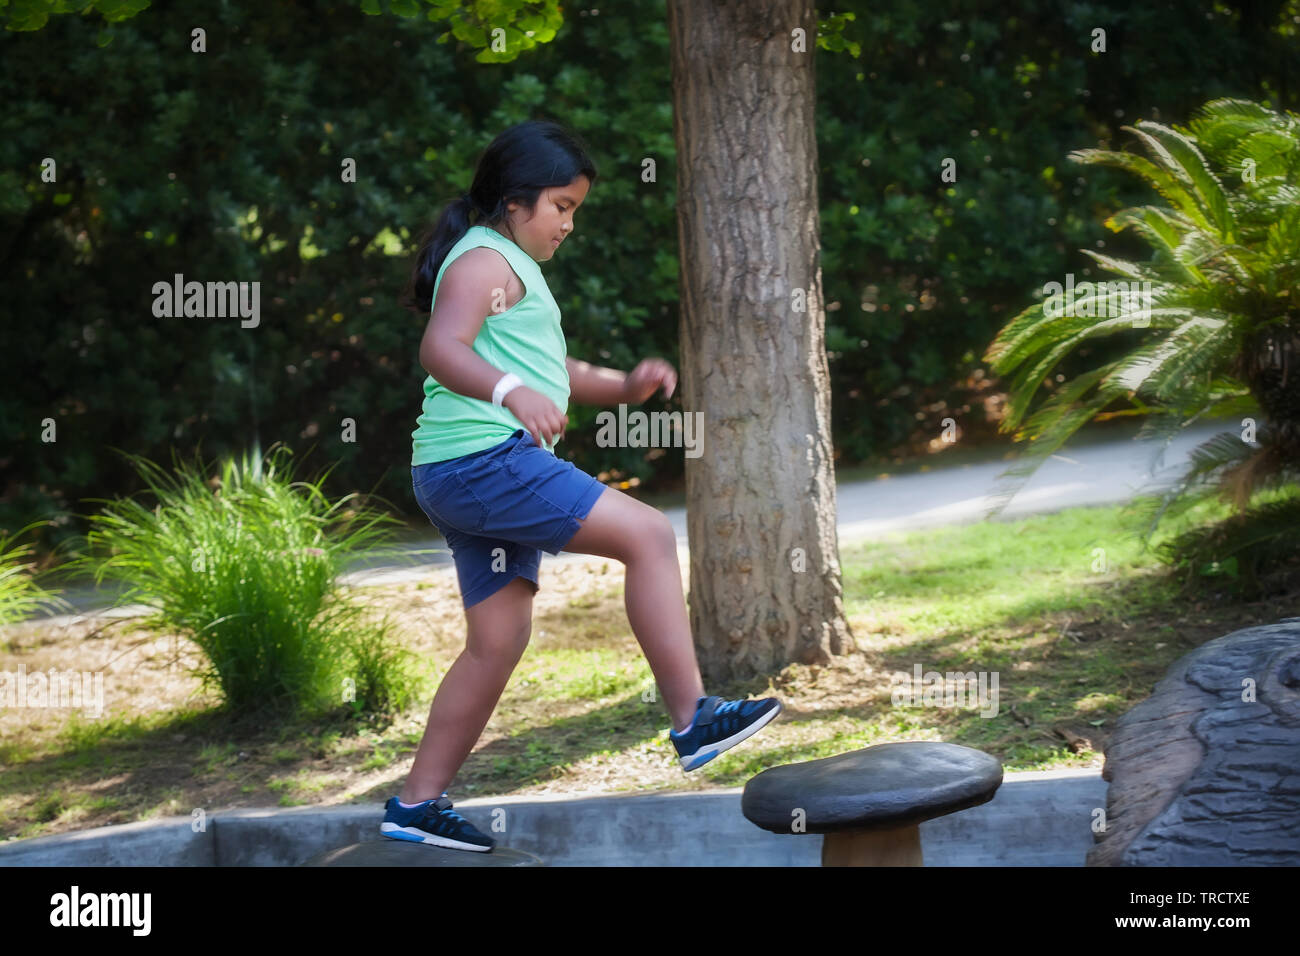 Pre jovencita saltando de un paso a otro en un parque infantil, haciendo actividad física que desarrolla su sentido del equilibrio. Foto de stock